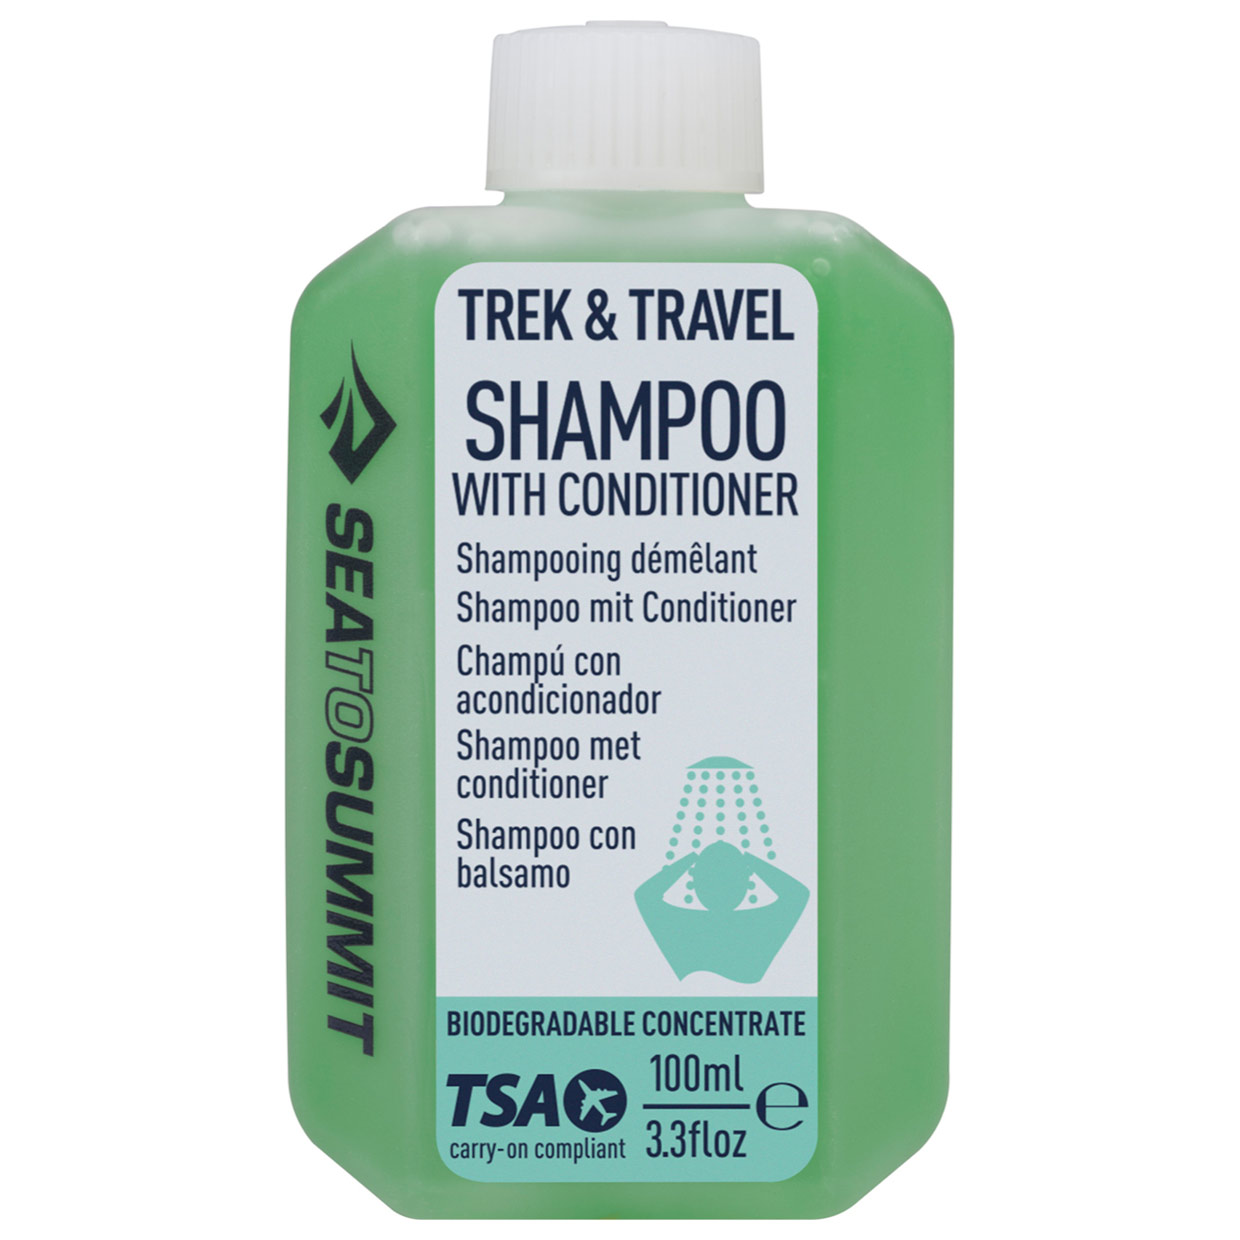 Trek & Travel Shampoo mit Spülung